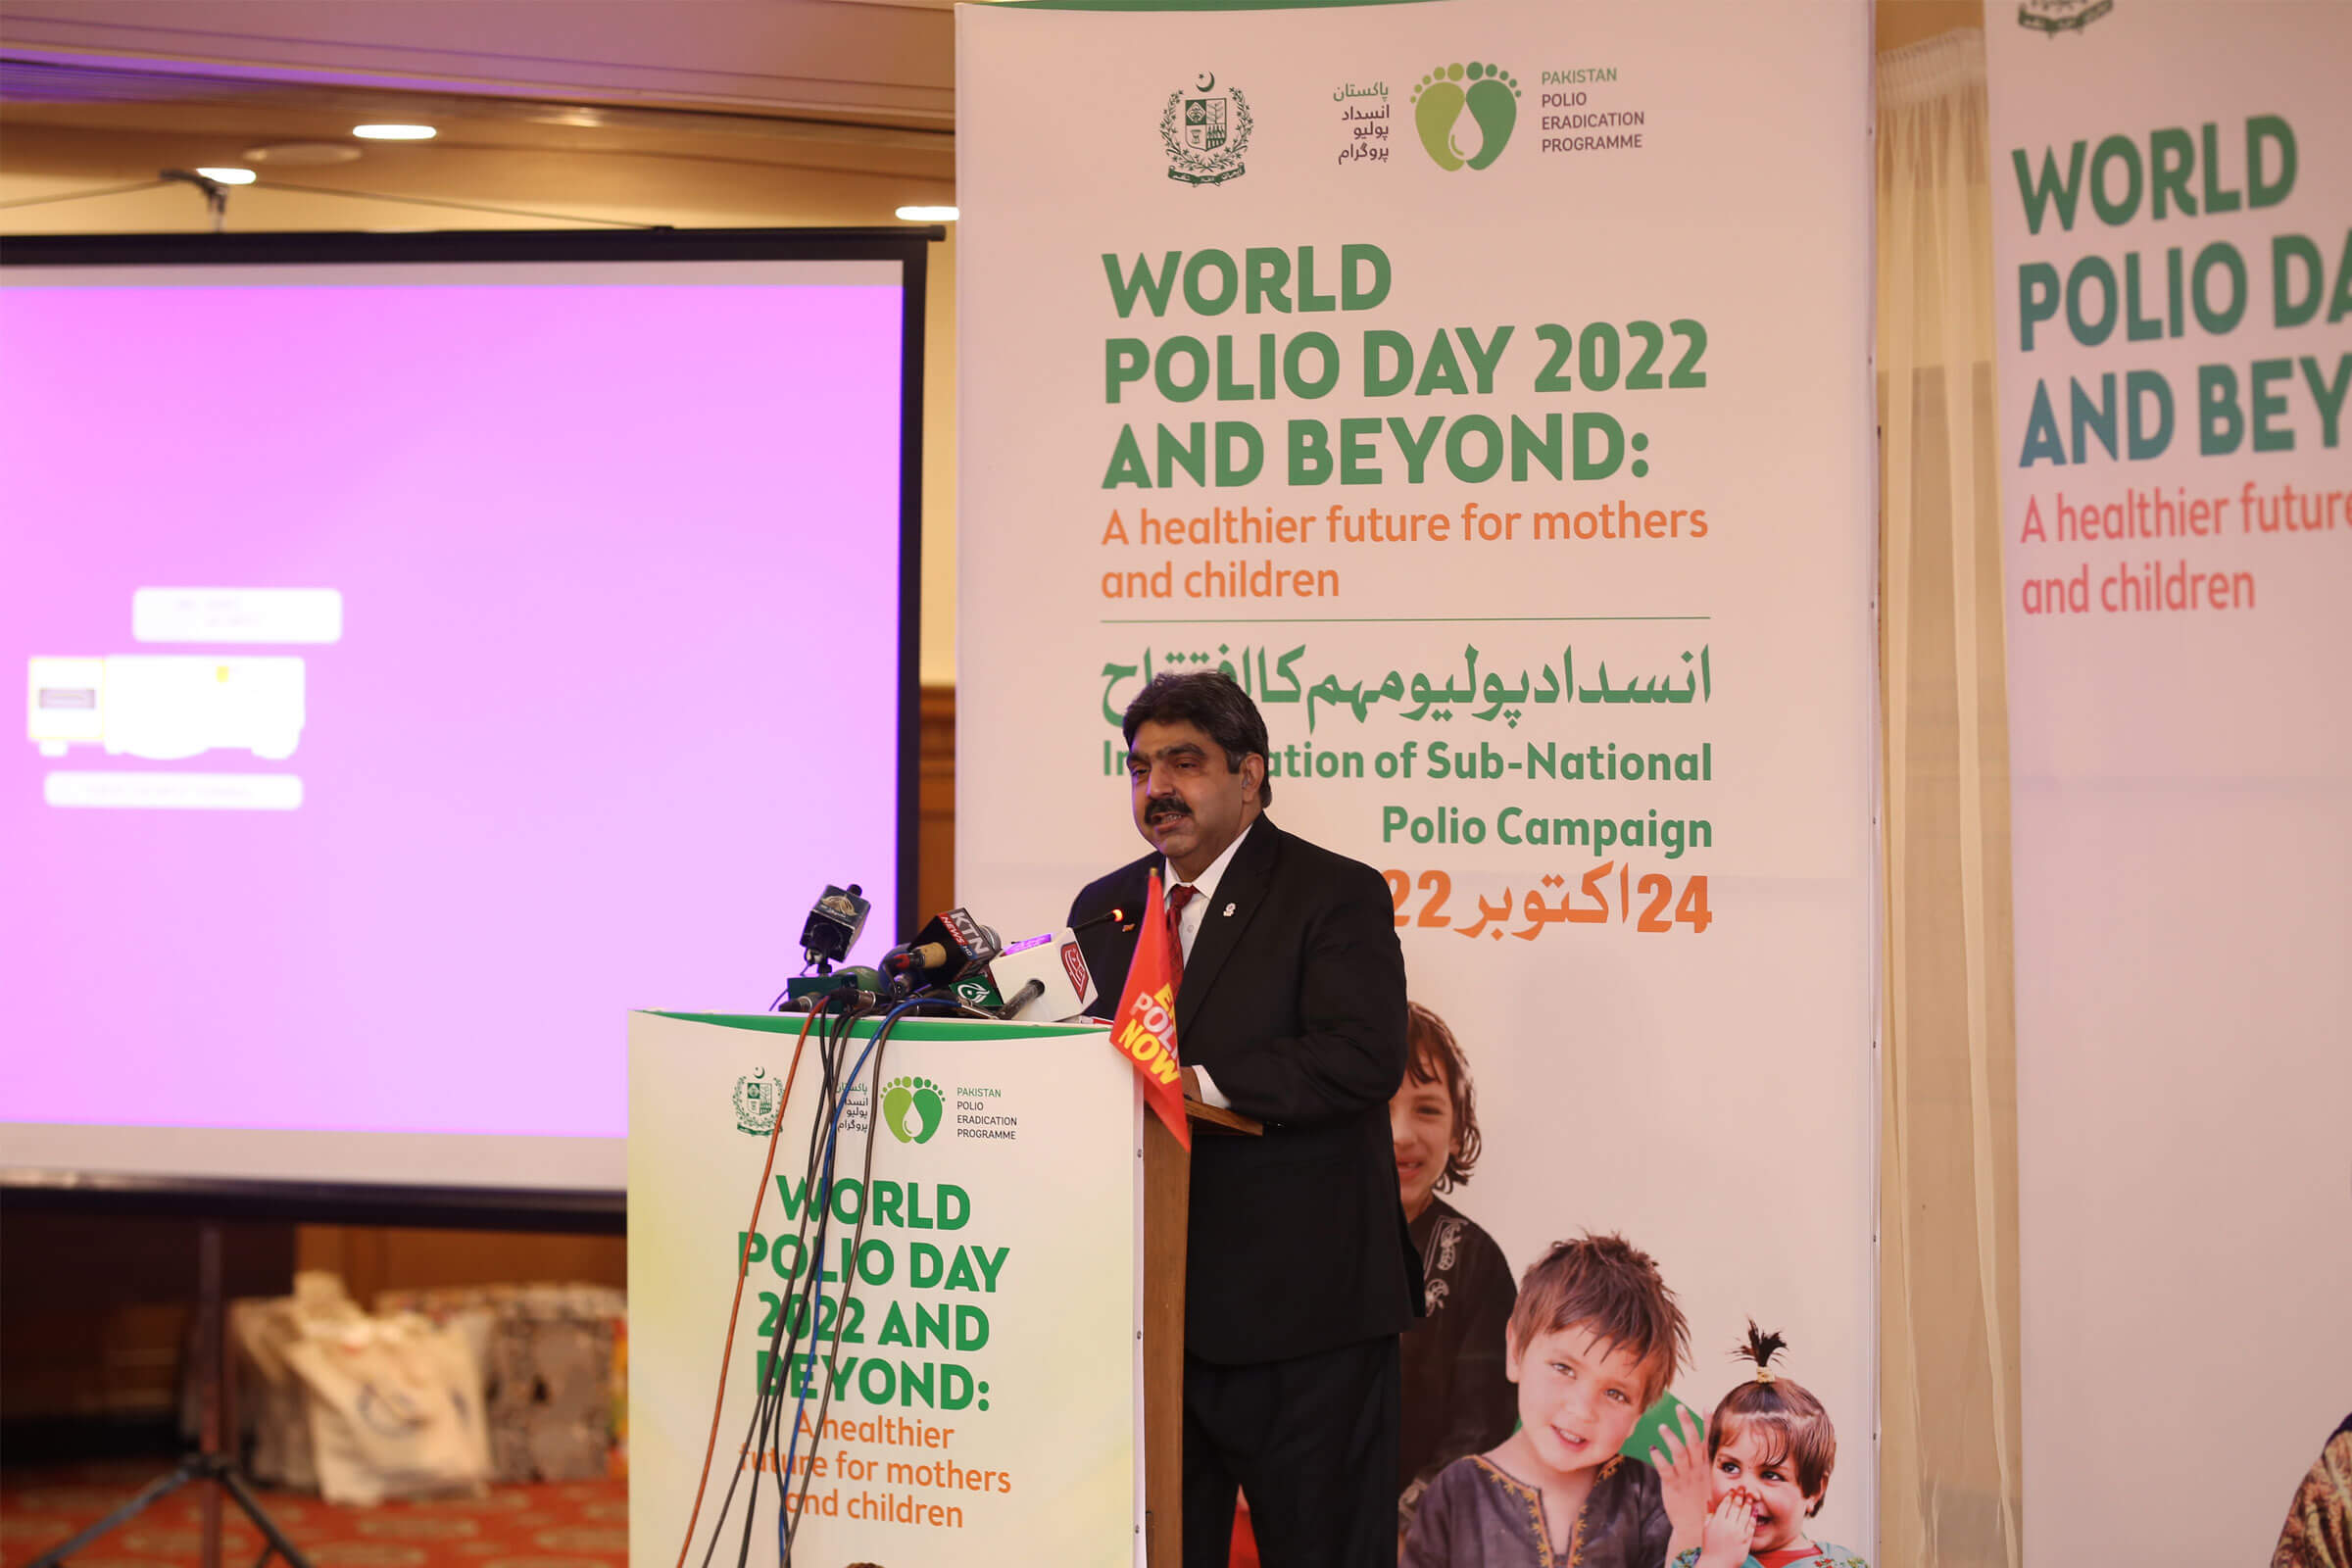 World Polio Day 2022